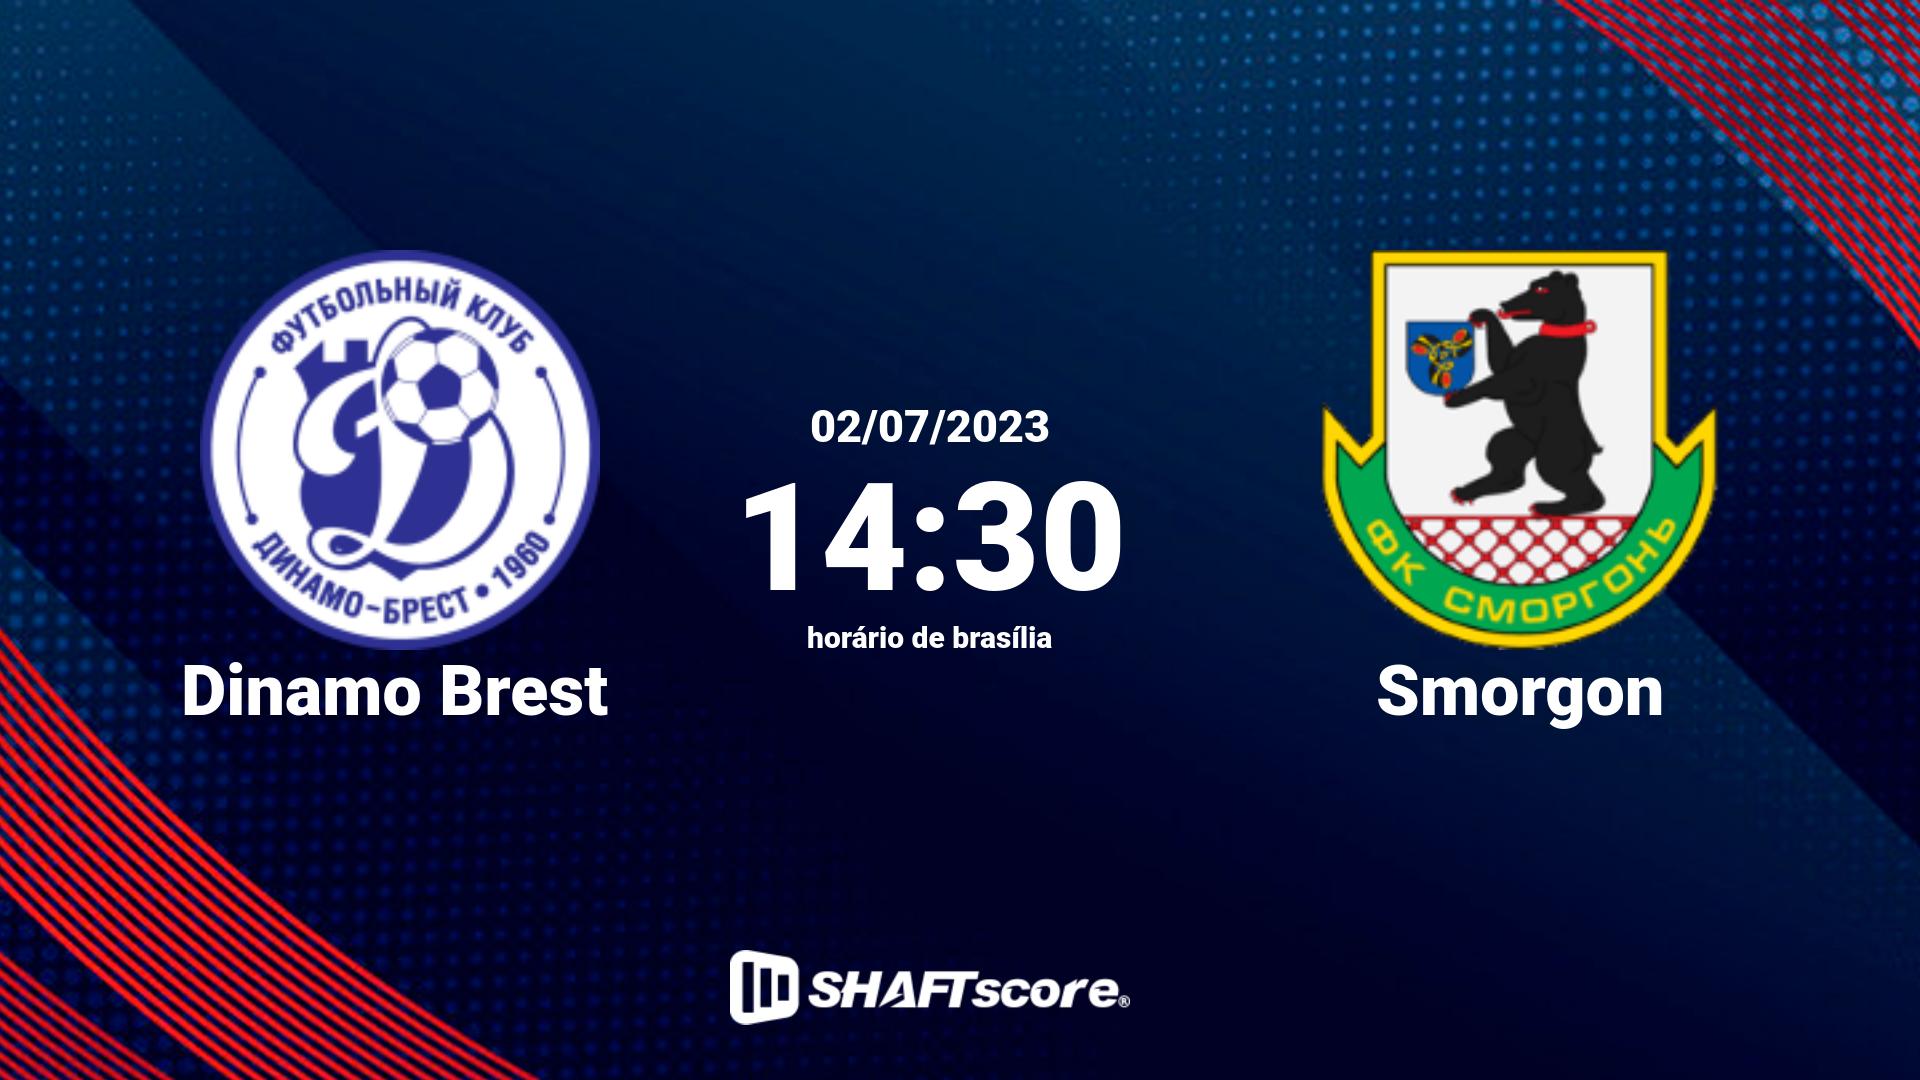 Estatísticas do jogo Dinamo Brest vs Smorgon 02.07 14:30